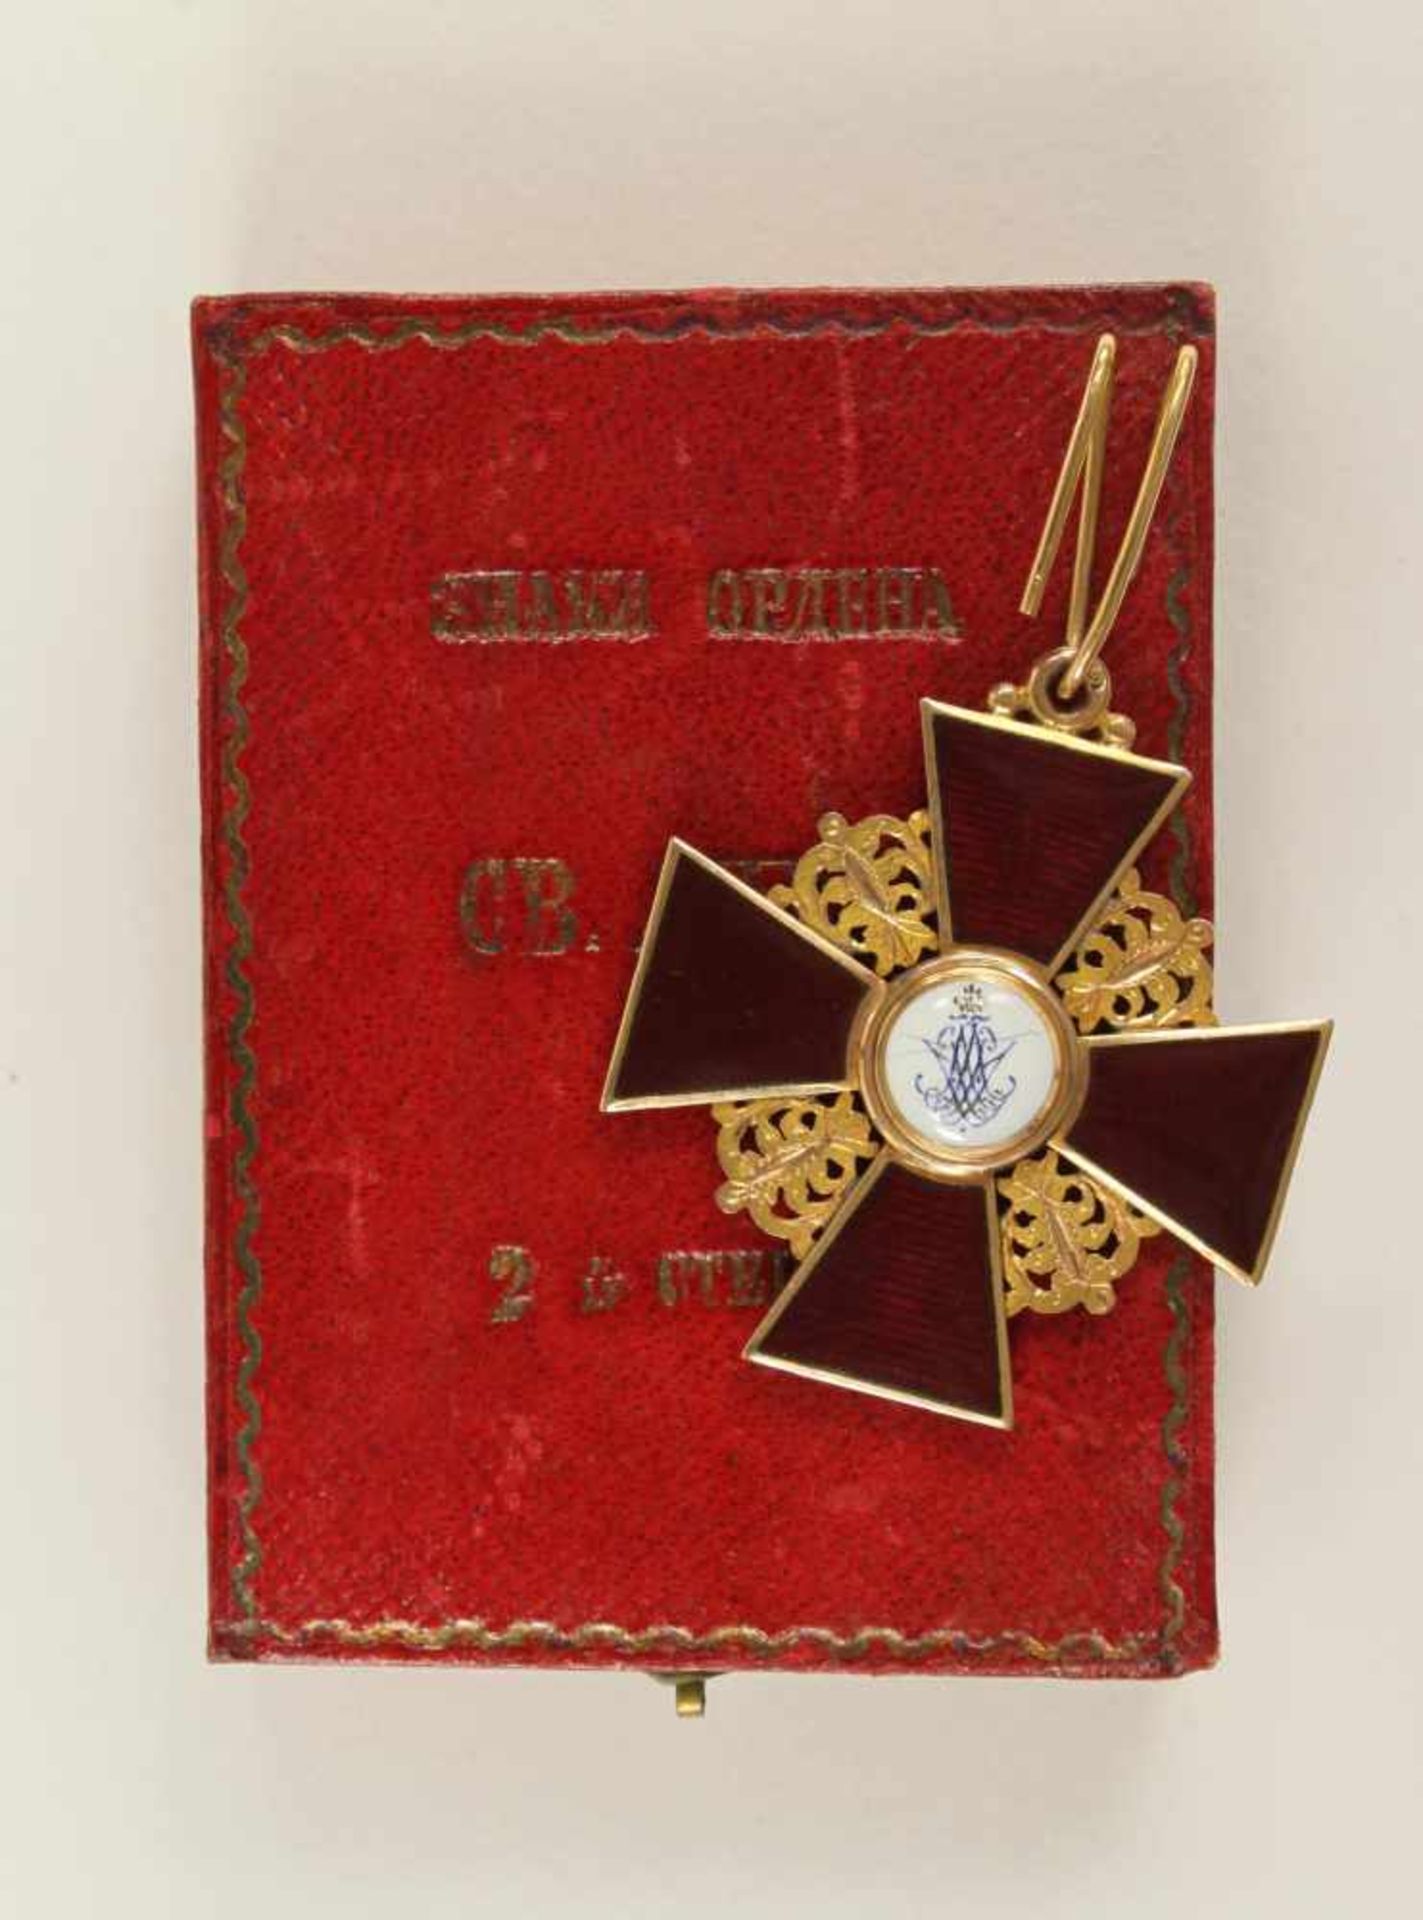 St. Anna-Orden, Kreuz 2. Klasse. Kreuz Gold emailliert, 42mm, das Medaillon fein gemalt, das - Bild 2 aus 2